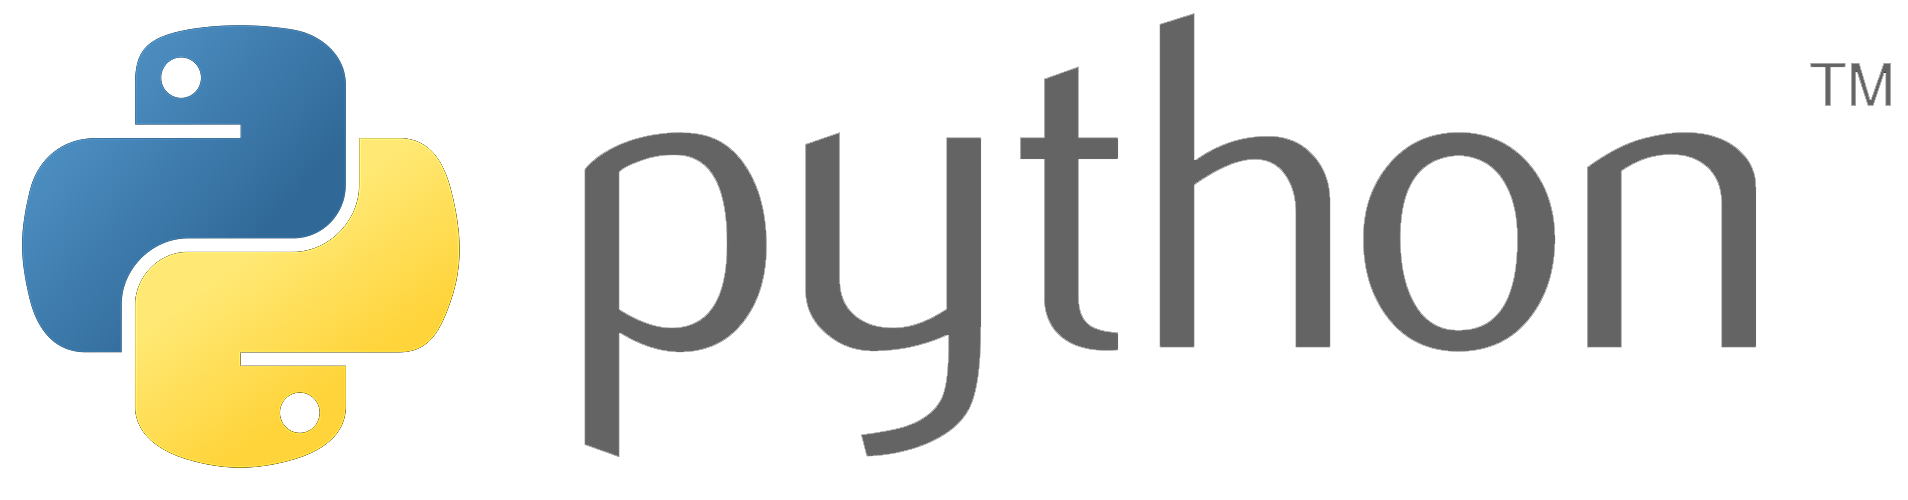 paython